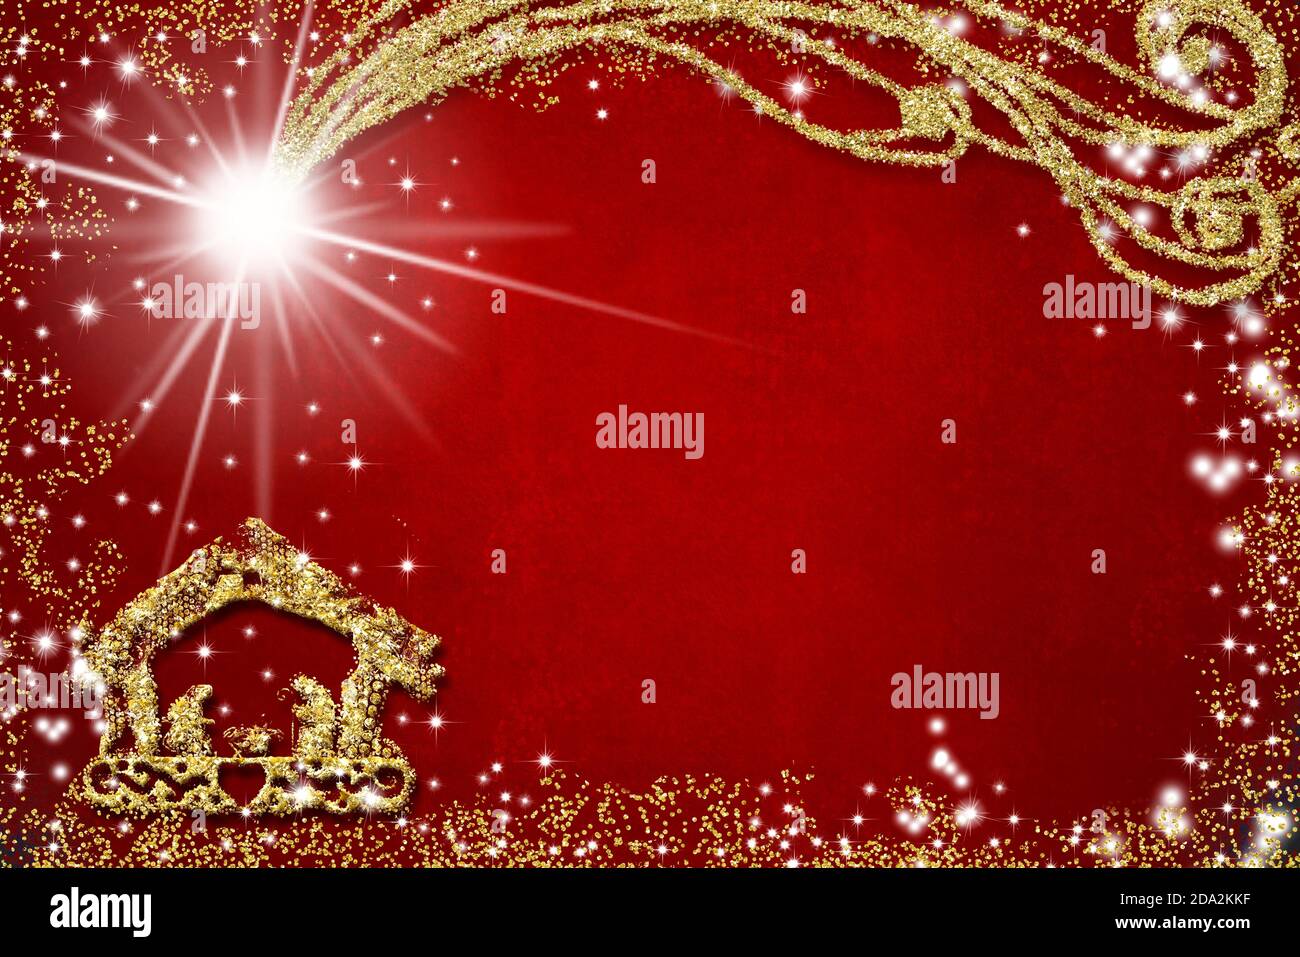 Arrière-plan de salutation religieuse de Noël. Dessin abstrait à main levée de la scène Nativité avec paillettes dorées, fond rouge grunge avec espace de copie. Banque D'Images